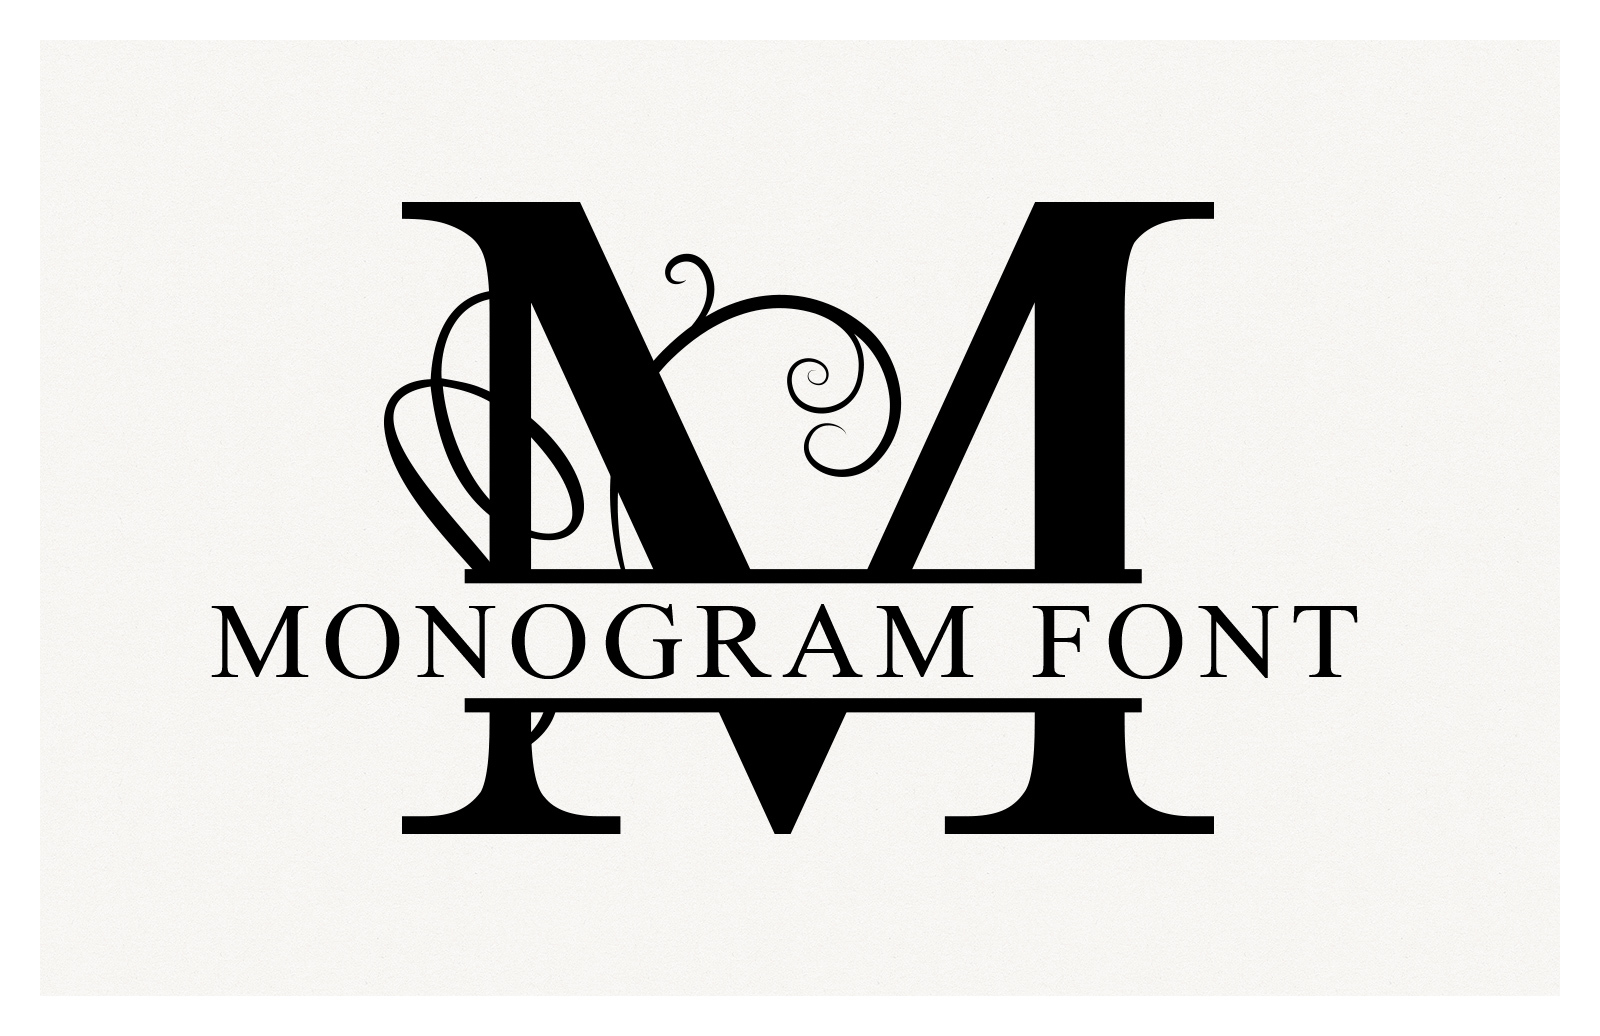 Download Split Monogram Font Vectors Medialoot SVG, PNG, EPS, DXF File